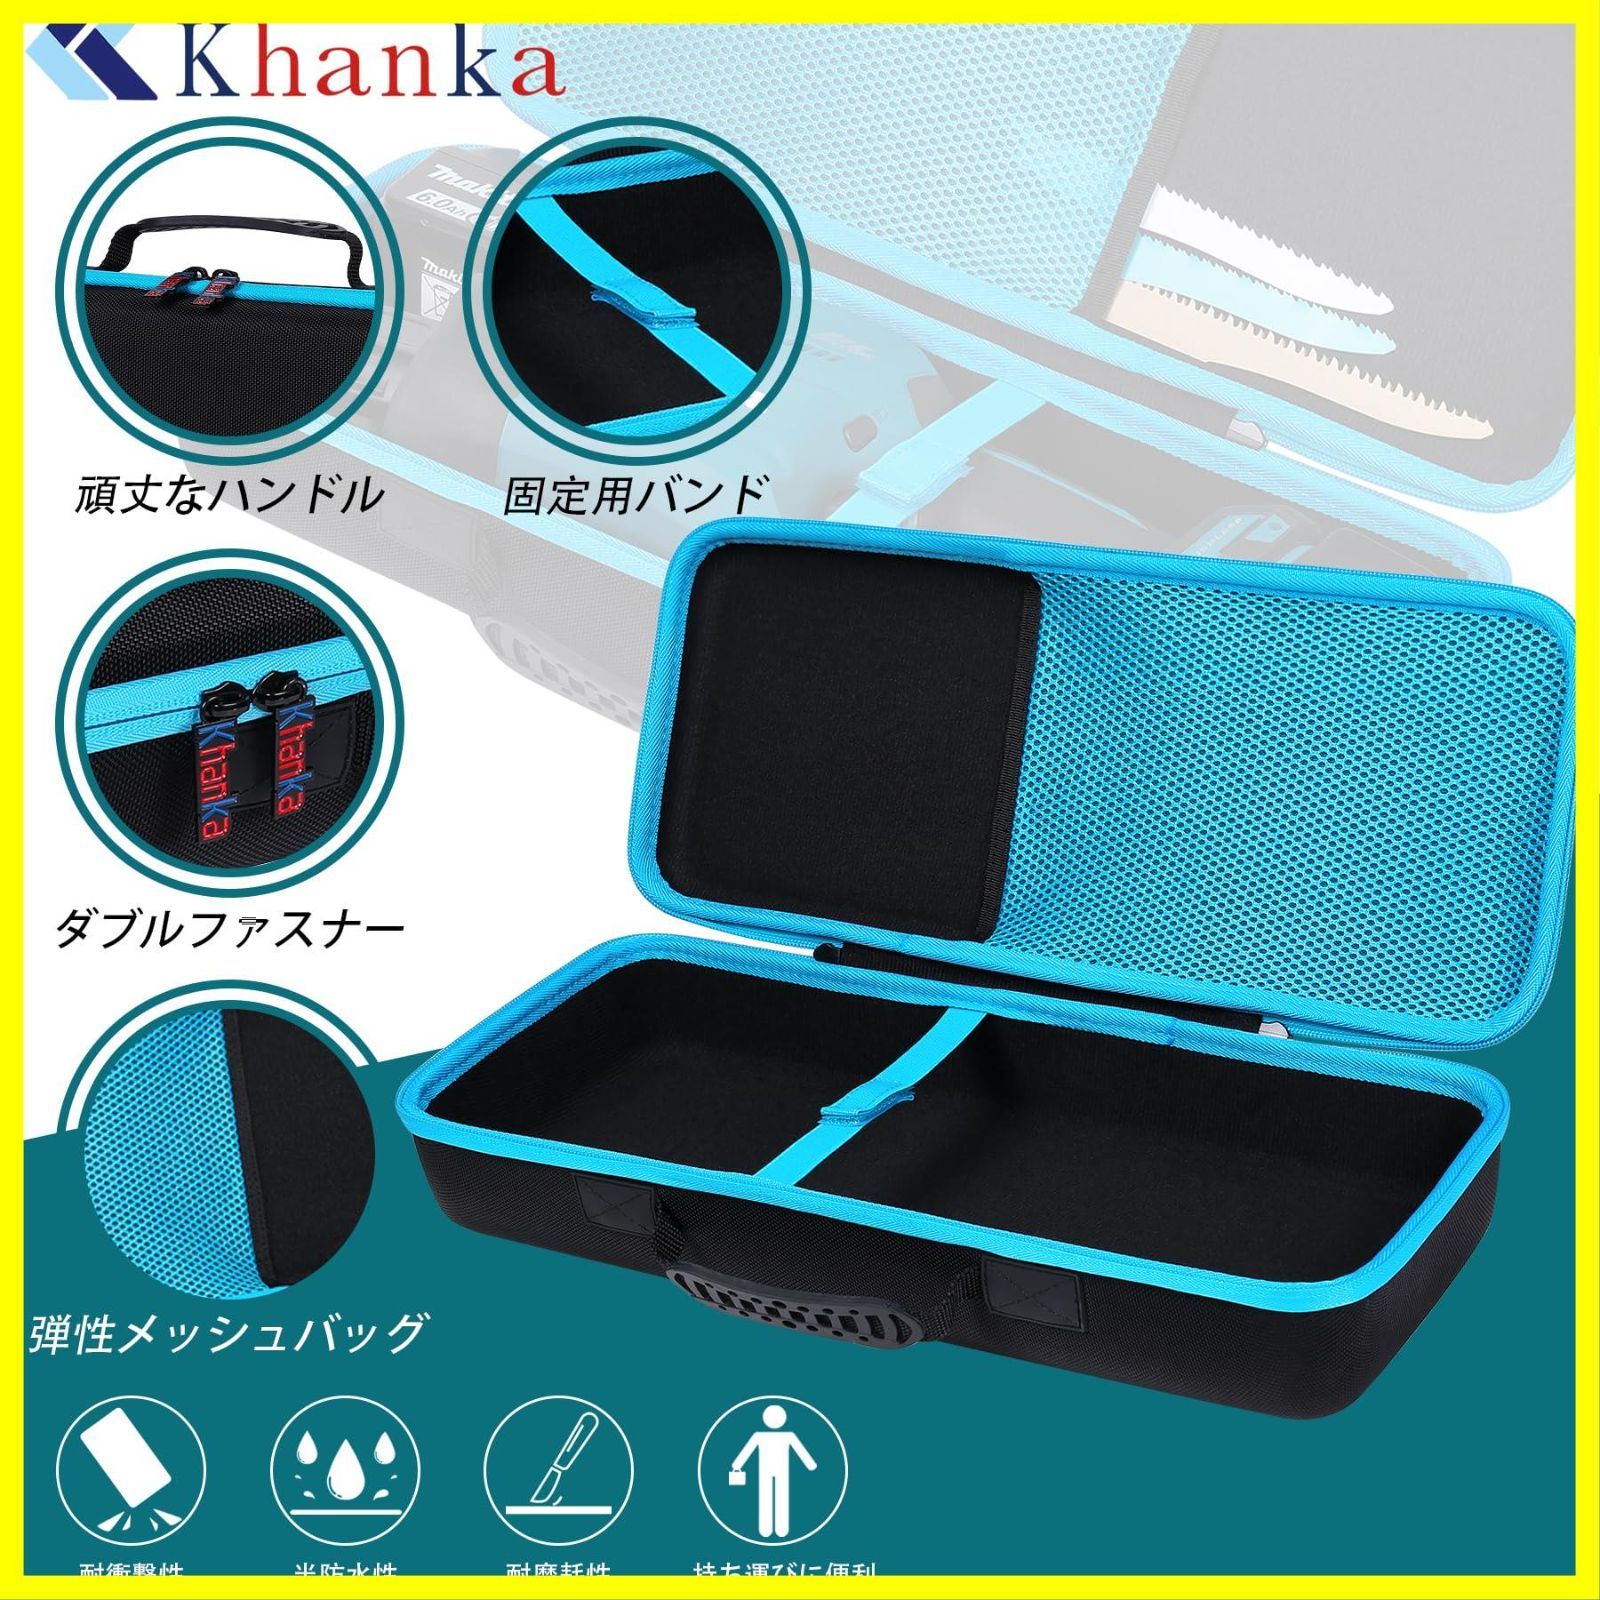 ☆送料無料☆Makita マキタ 充電式レシプロソー JR189DZ 18V 専用収納ケース（ケースのみ）-Khanka